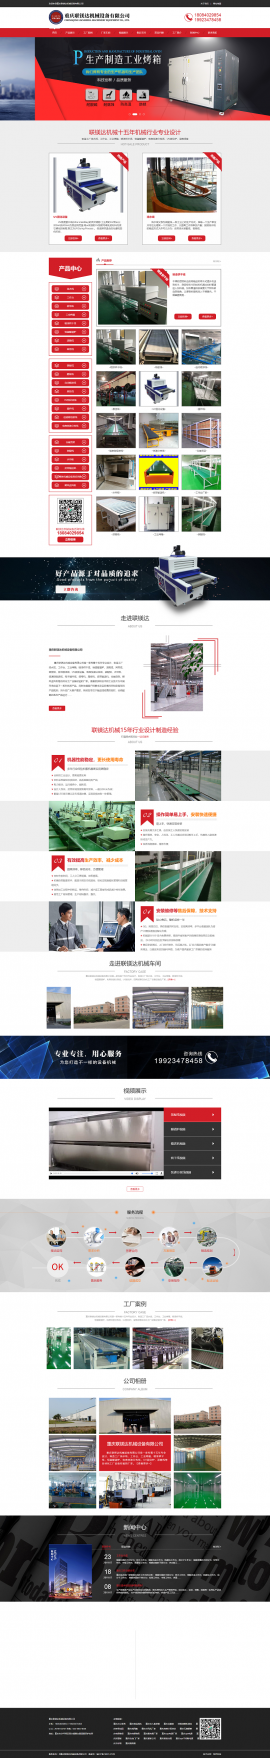 重庆联镁达机械设备有限公司网站建设案例